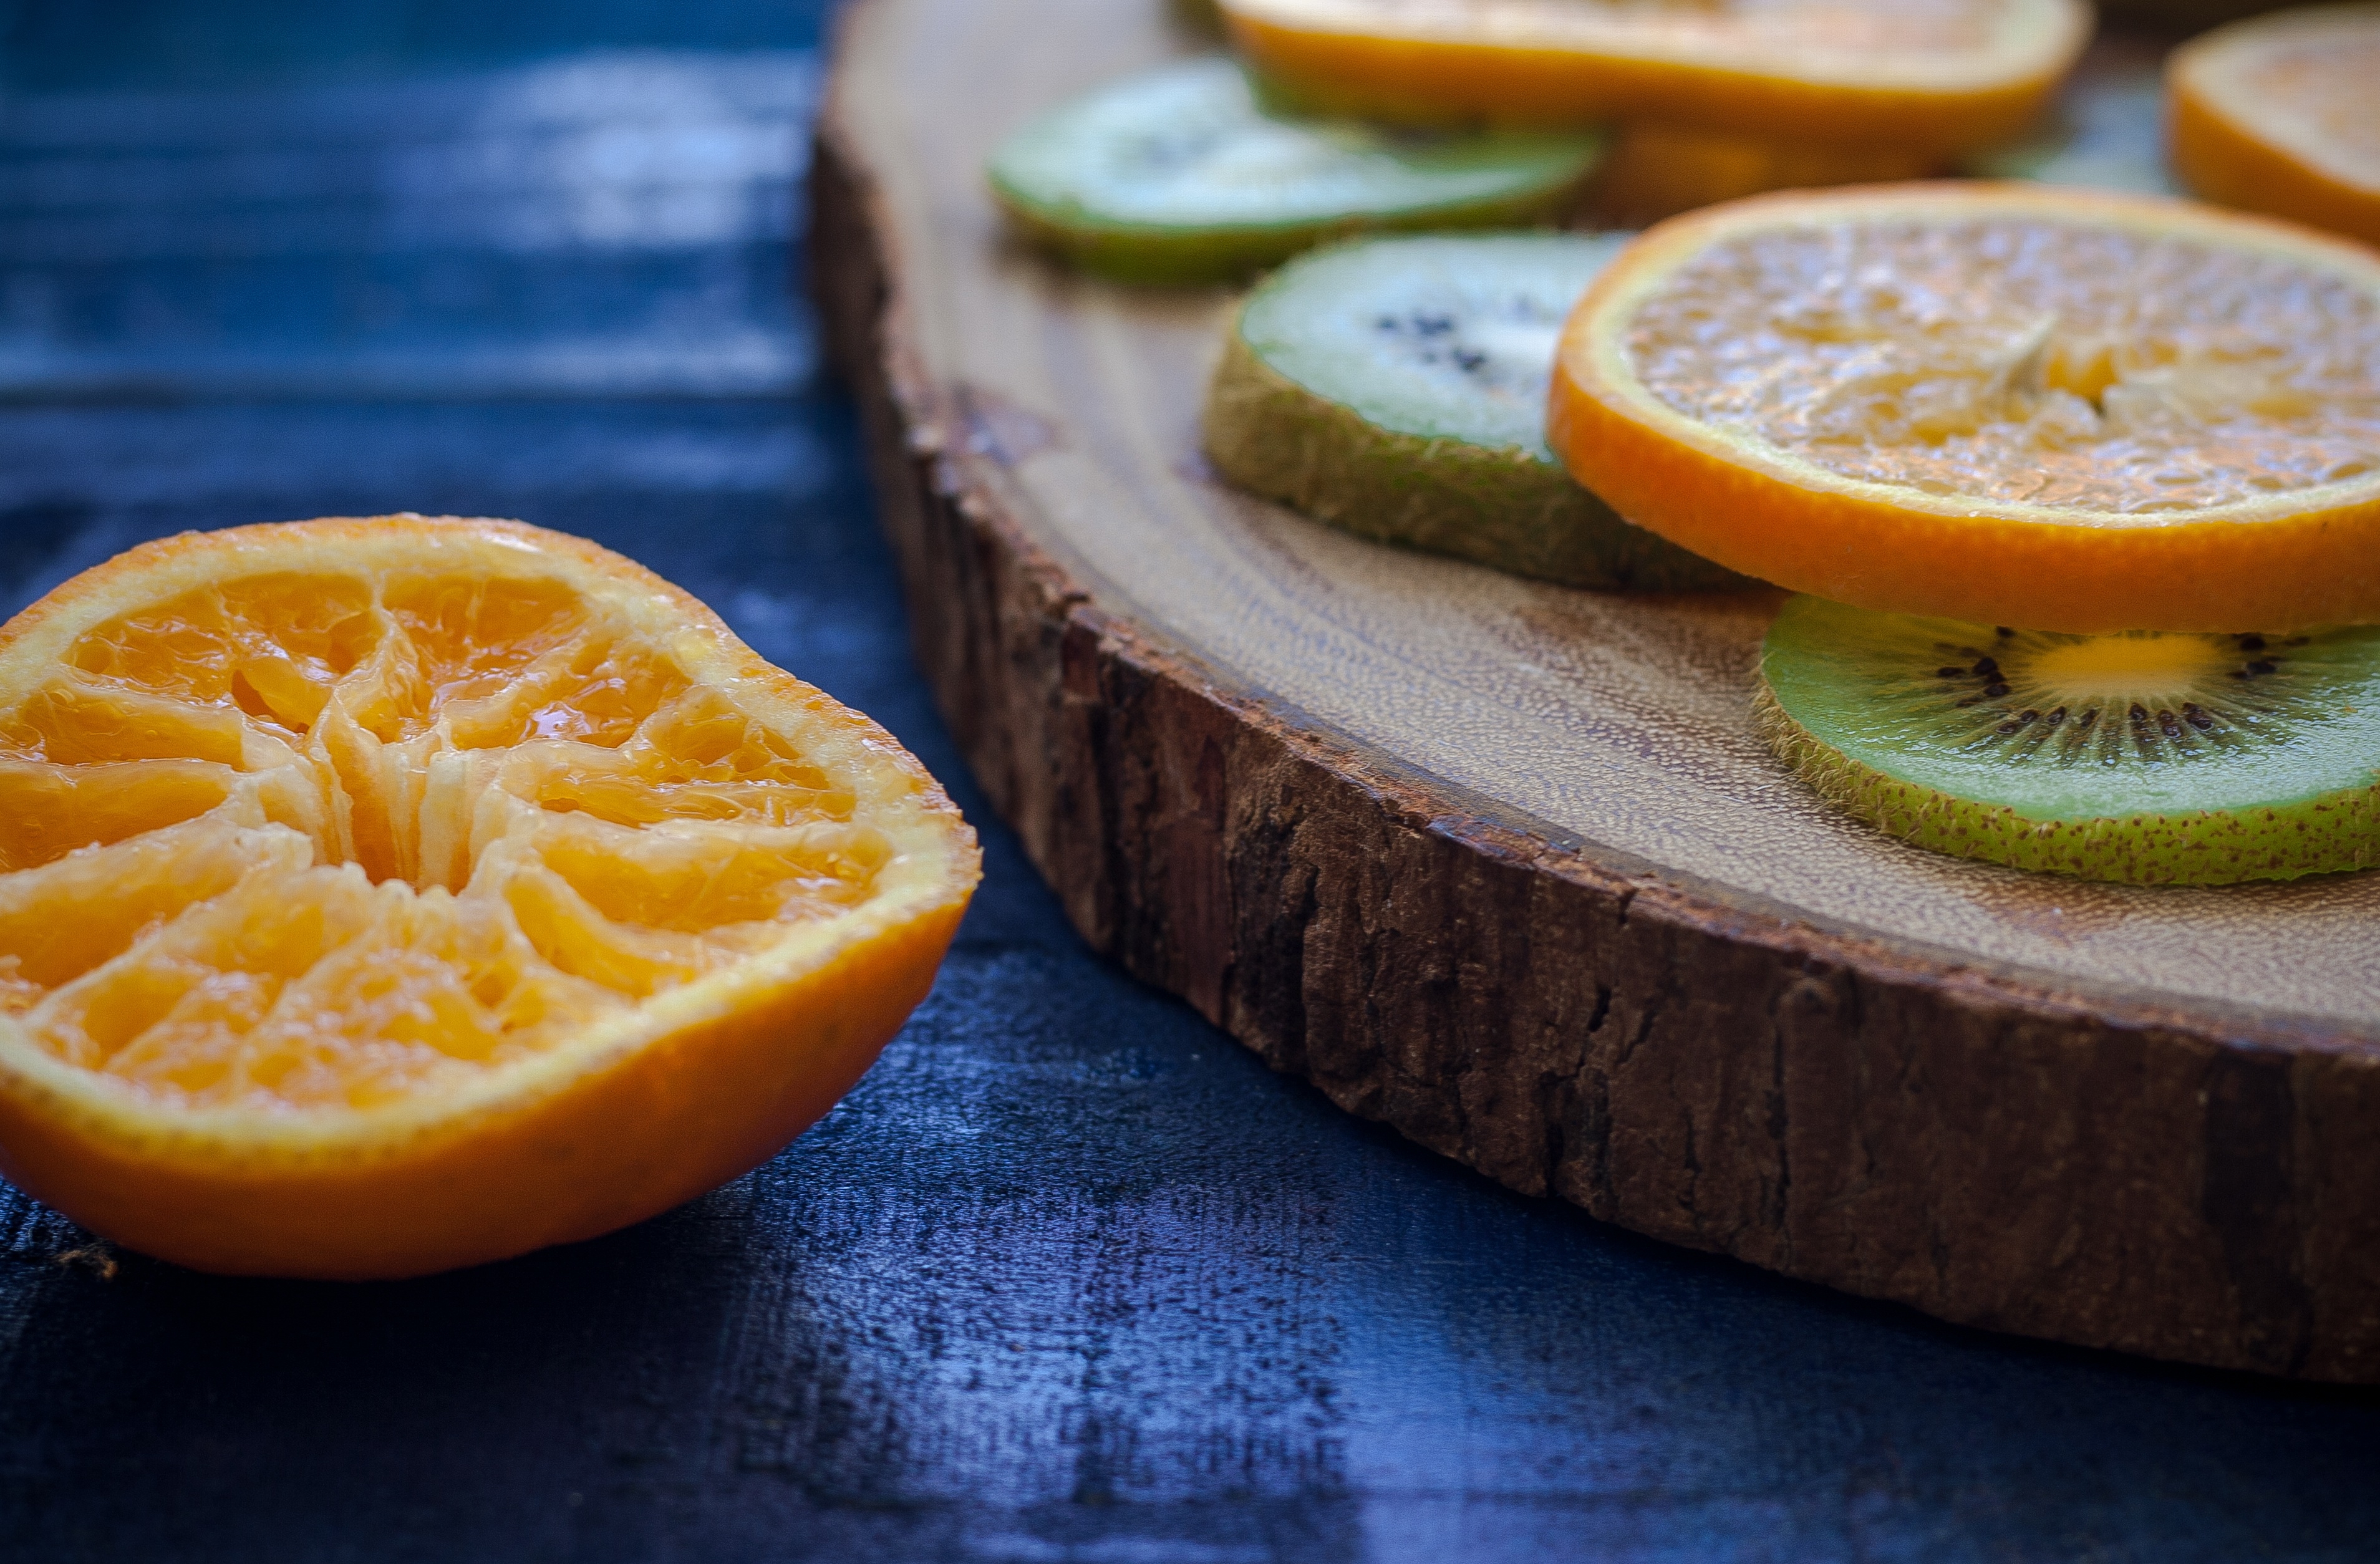 切成片的柑橘类水果